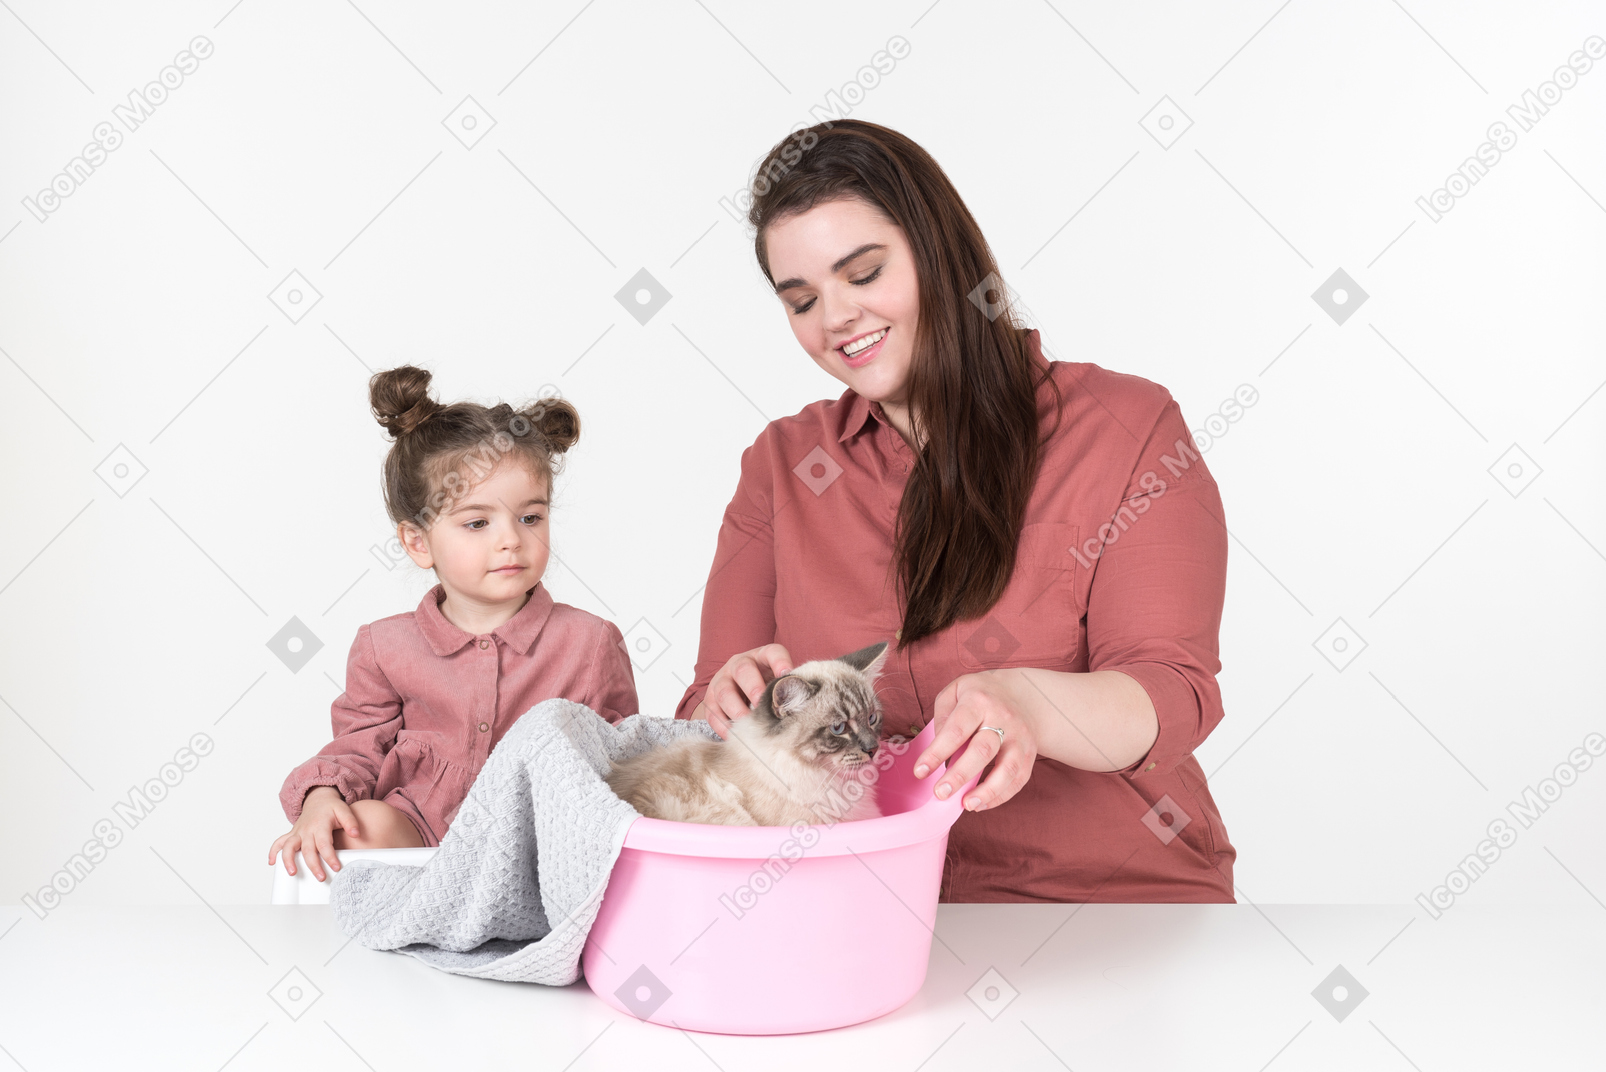 Madre y su pequeña hija, vestidas de rojo y rosa, sentadas a la mesa con su gato familiar